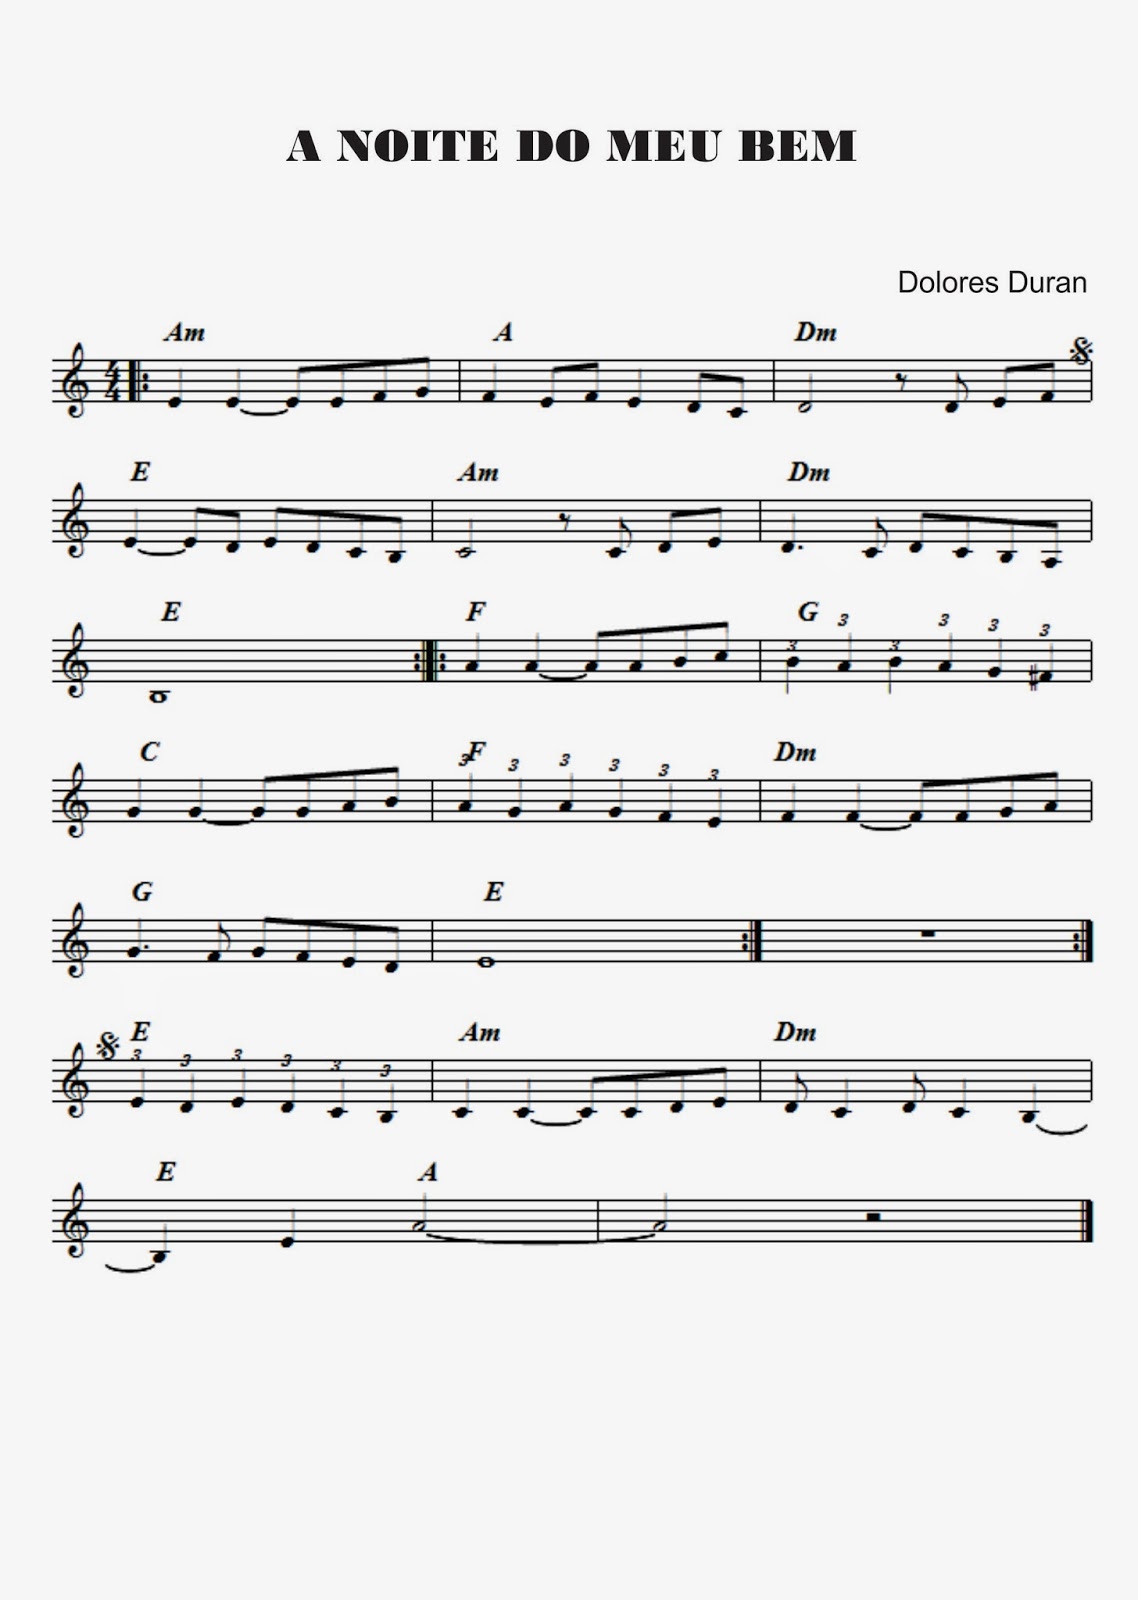 Adriano Dozol - Dicas, Partituras e Vídeos - Teclado  Piano: Cai, cai,  balão - Música infantil - Cantiga de Roda (Partitura para Teclado)